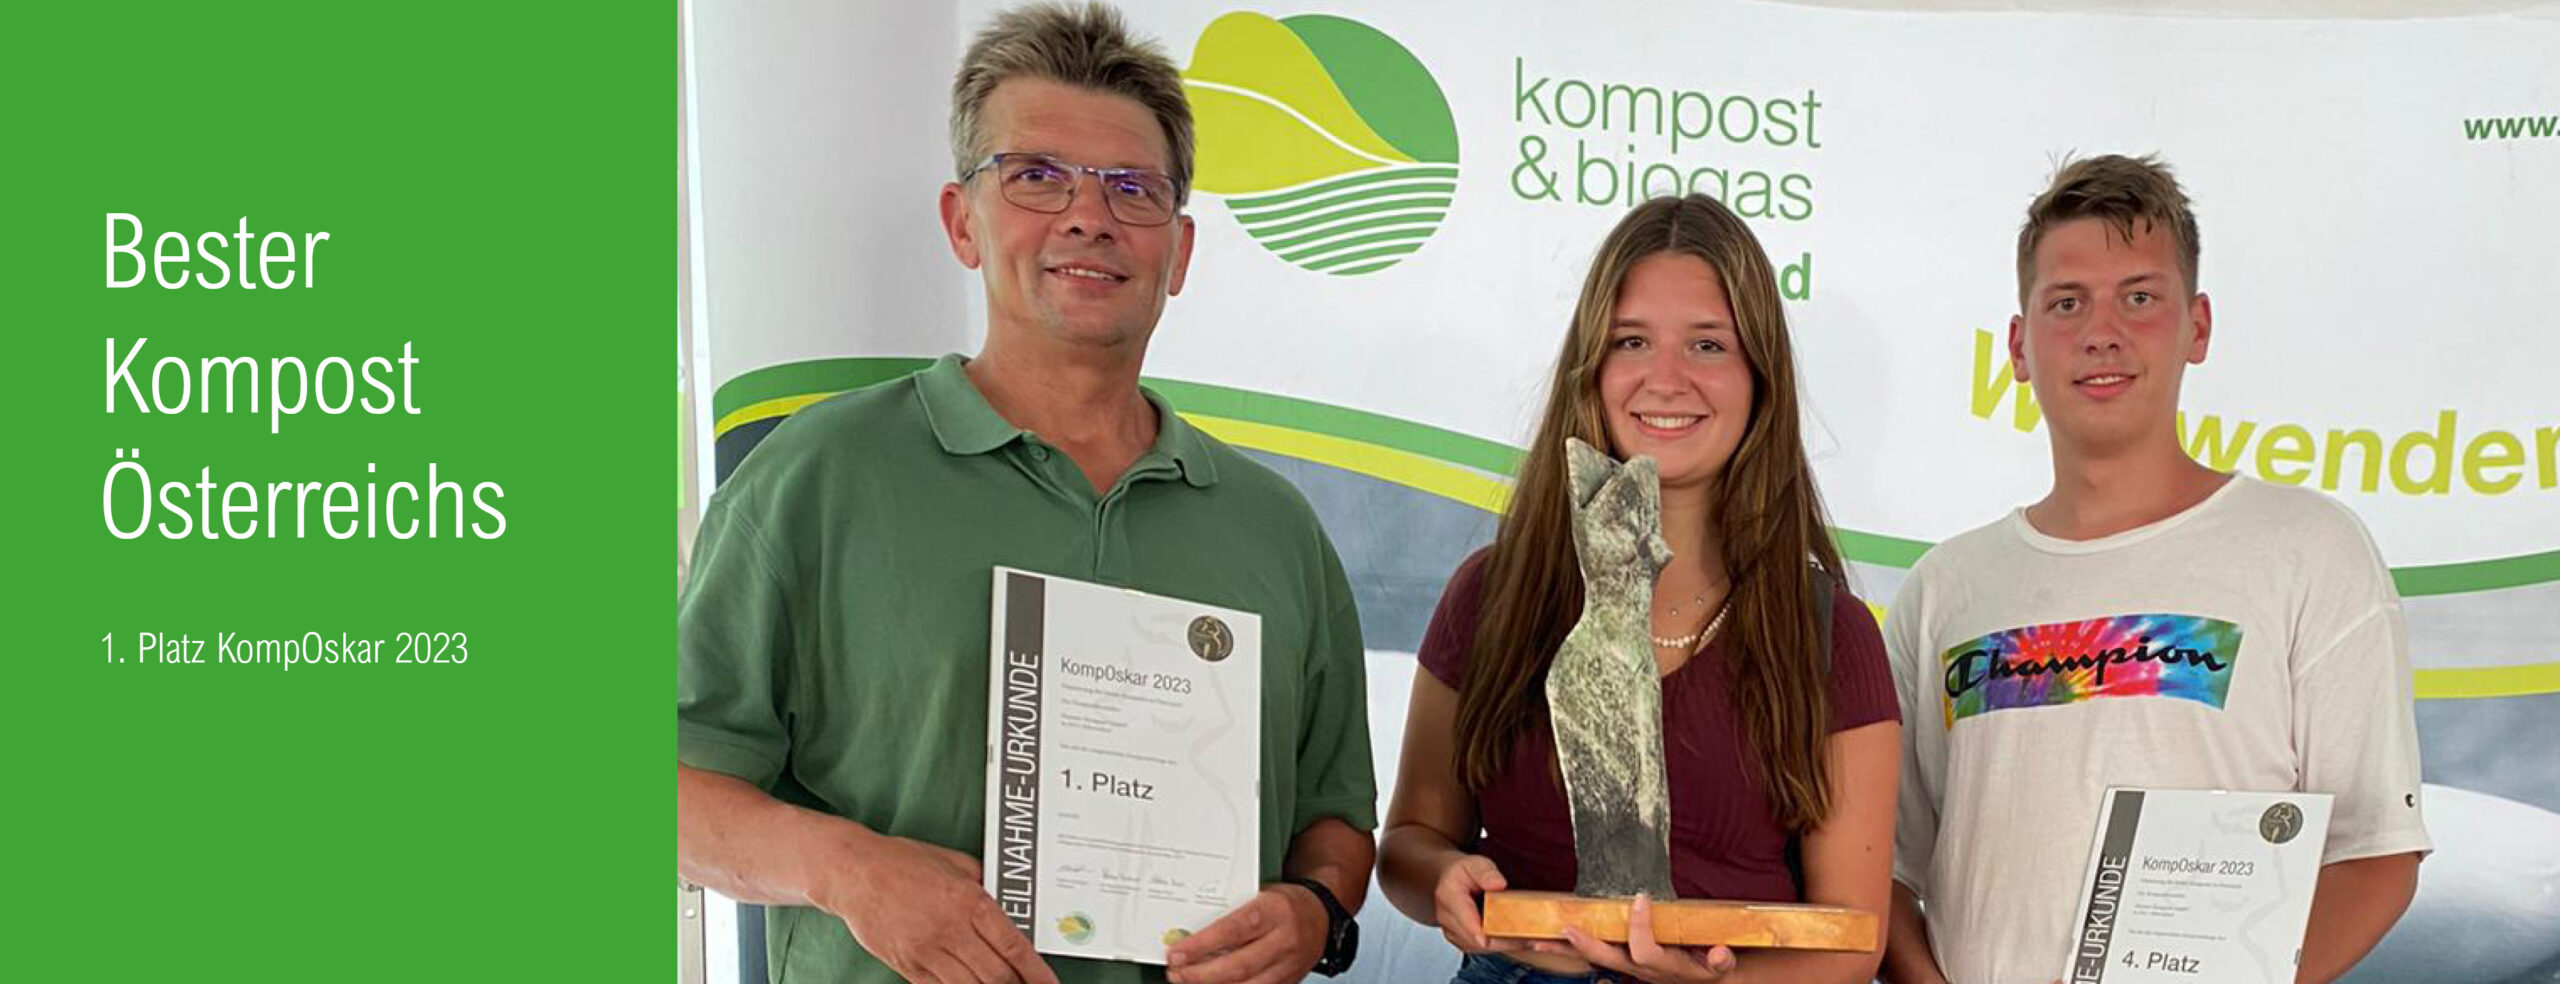 Bester Kompost Österreichs